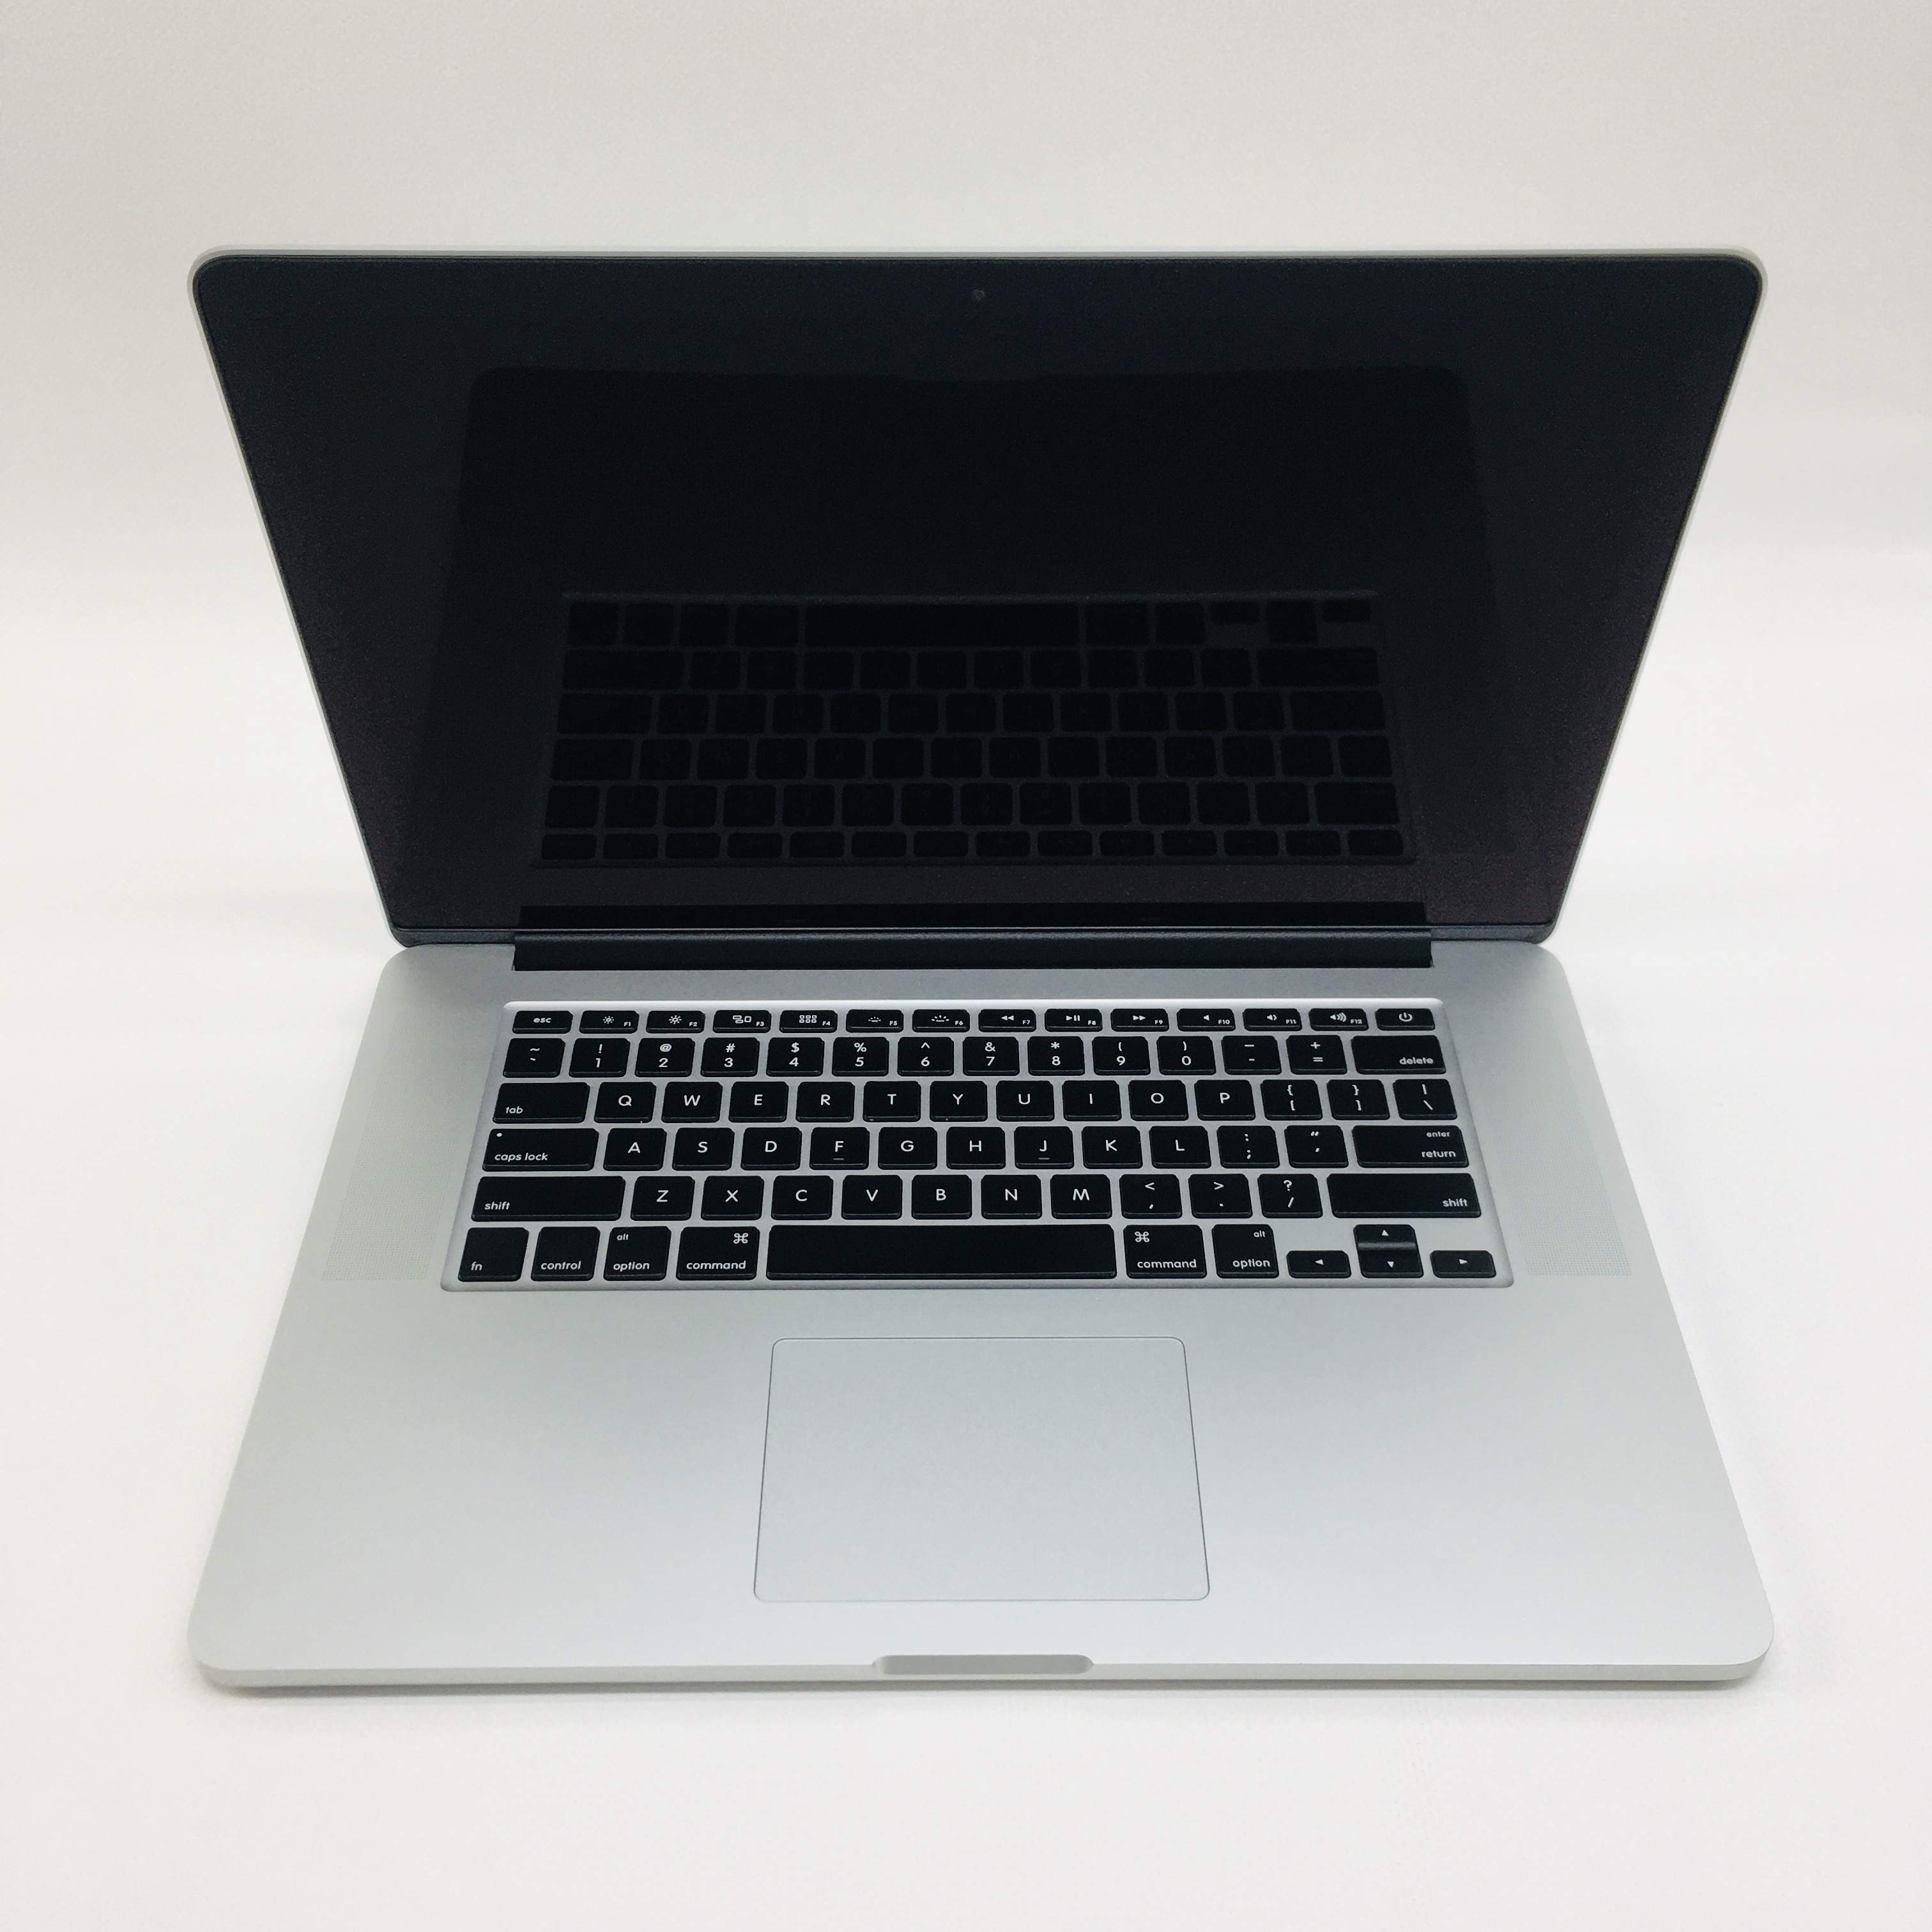 macbook pro 2013 ram